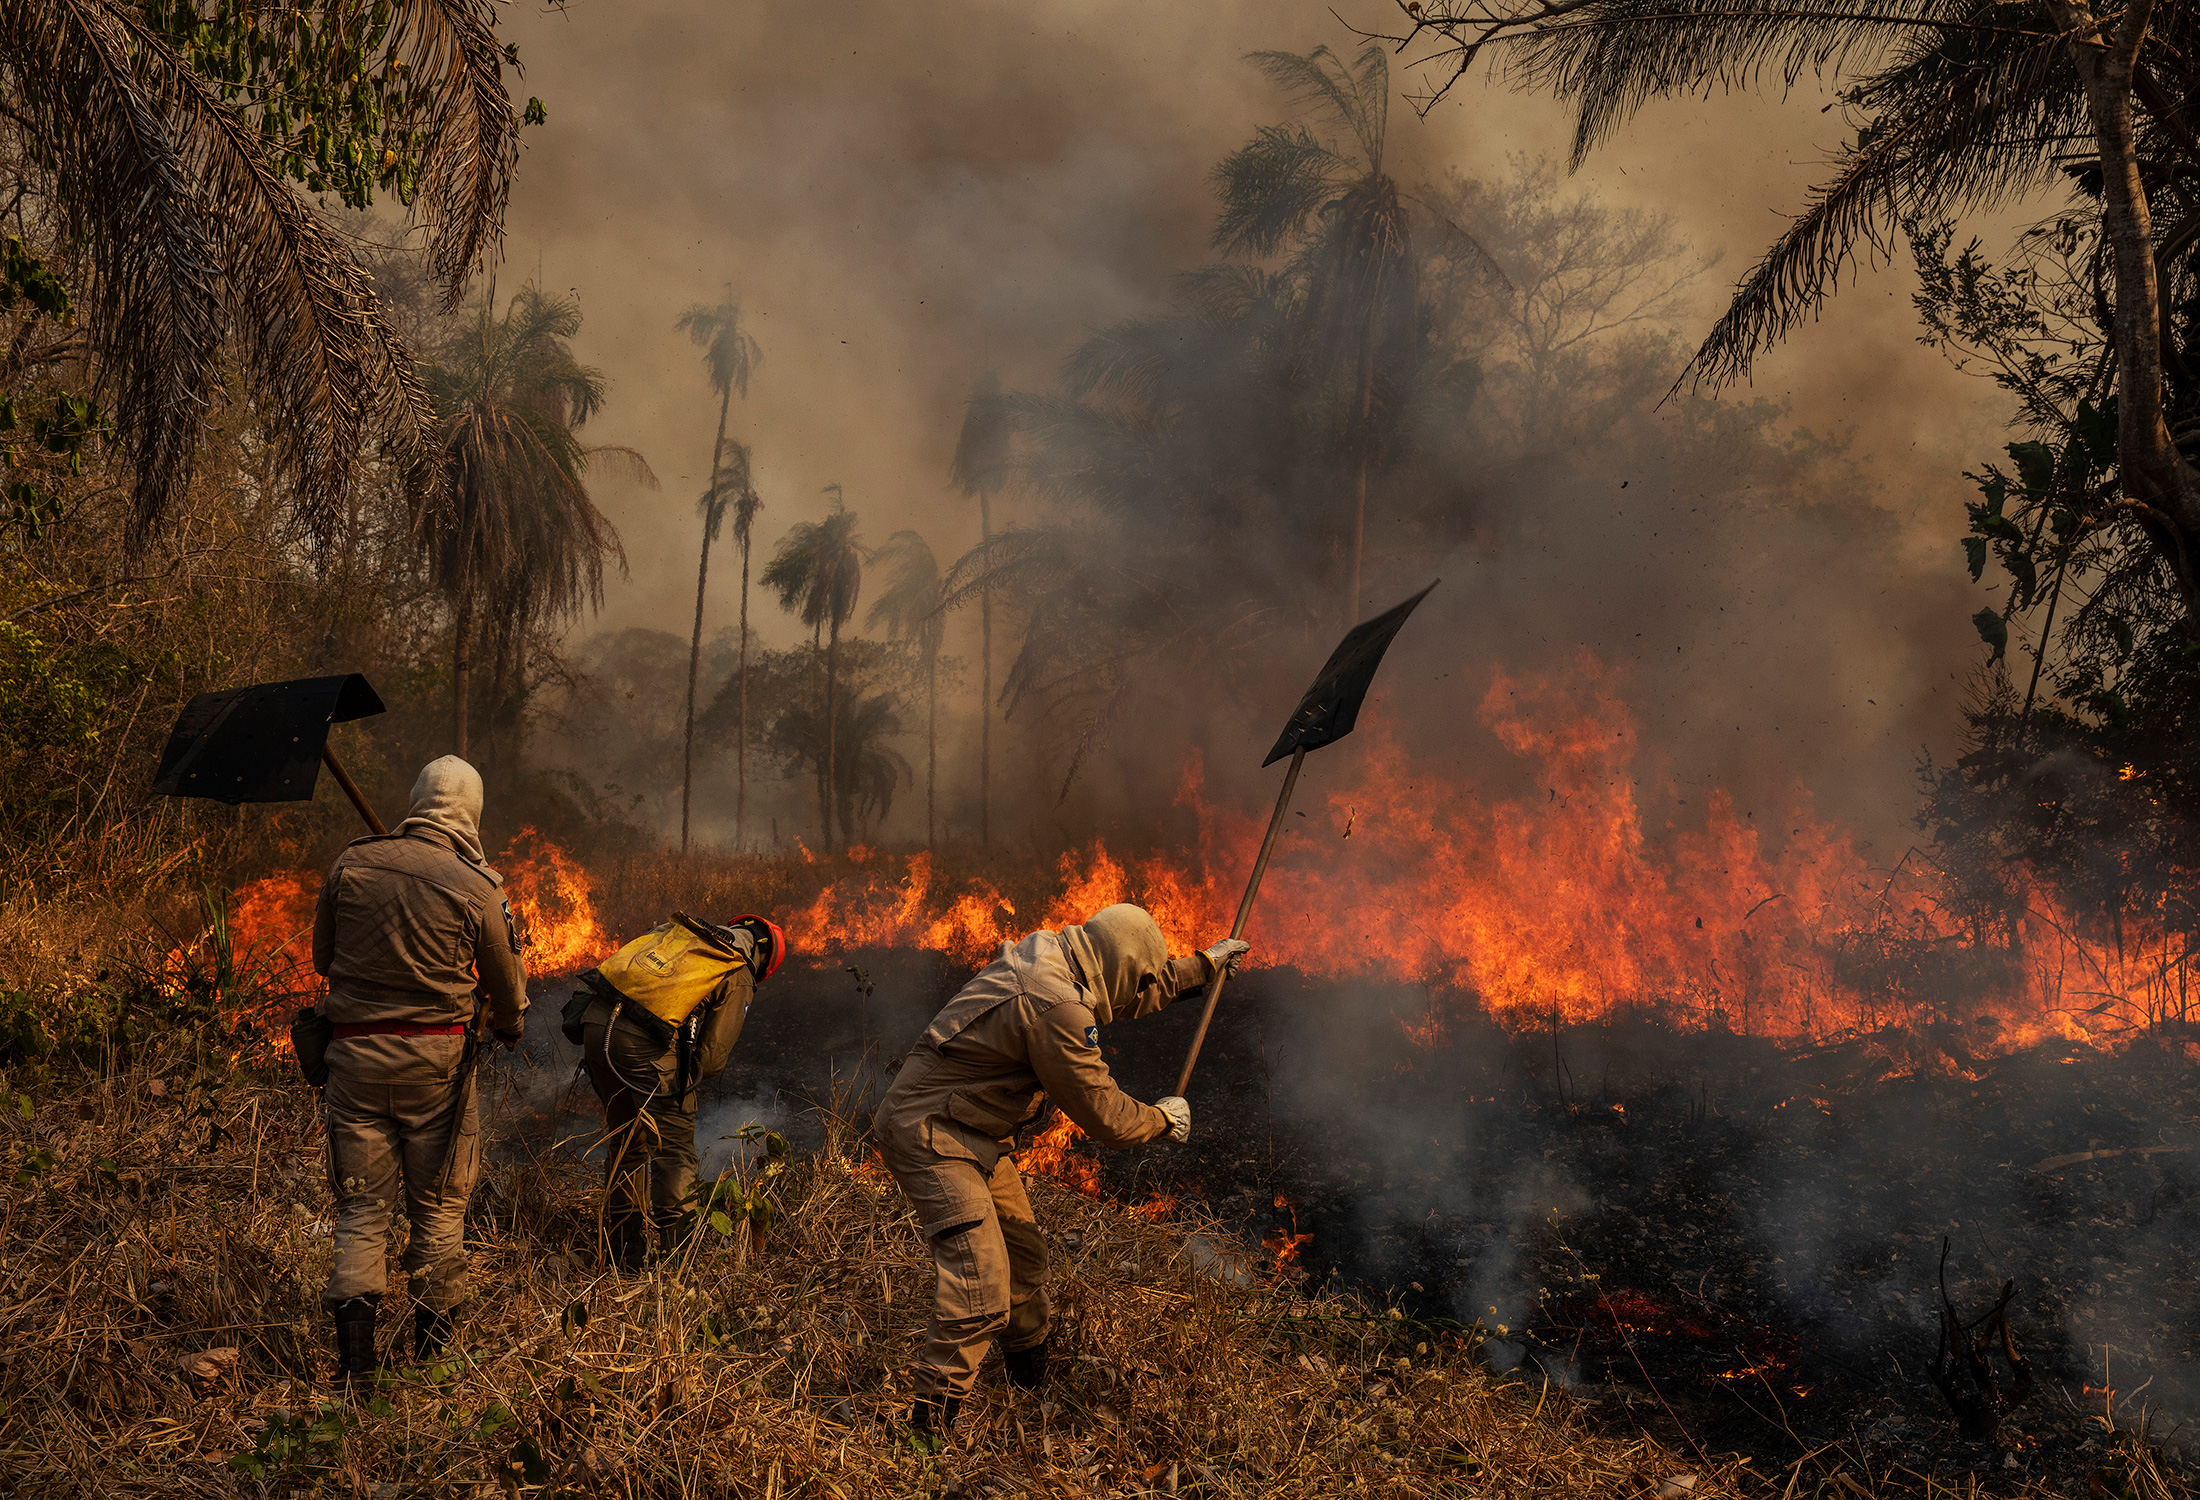 Автор:  Лалу де Альмейда

Фоторепортаж &laquo;Пантанал в огне&raquo;

Пантанал в Бразилии&nbsp;&mdash; крупнейшая в мире болотистая местность (до 160 тыс. кв. км). Она была охвачена пожарами в течение 2020 года. Причинами стали сильнейшая почти за 50 лет засуха и подсечно-огневое земледелие, распространившееся из-за ослабления природоохранного контроля в стране в последние годы